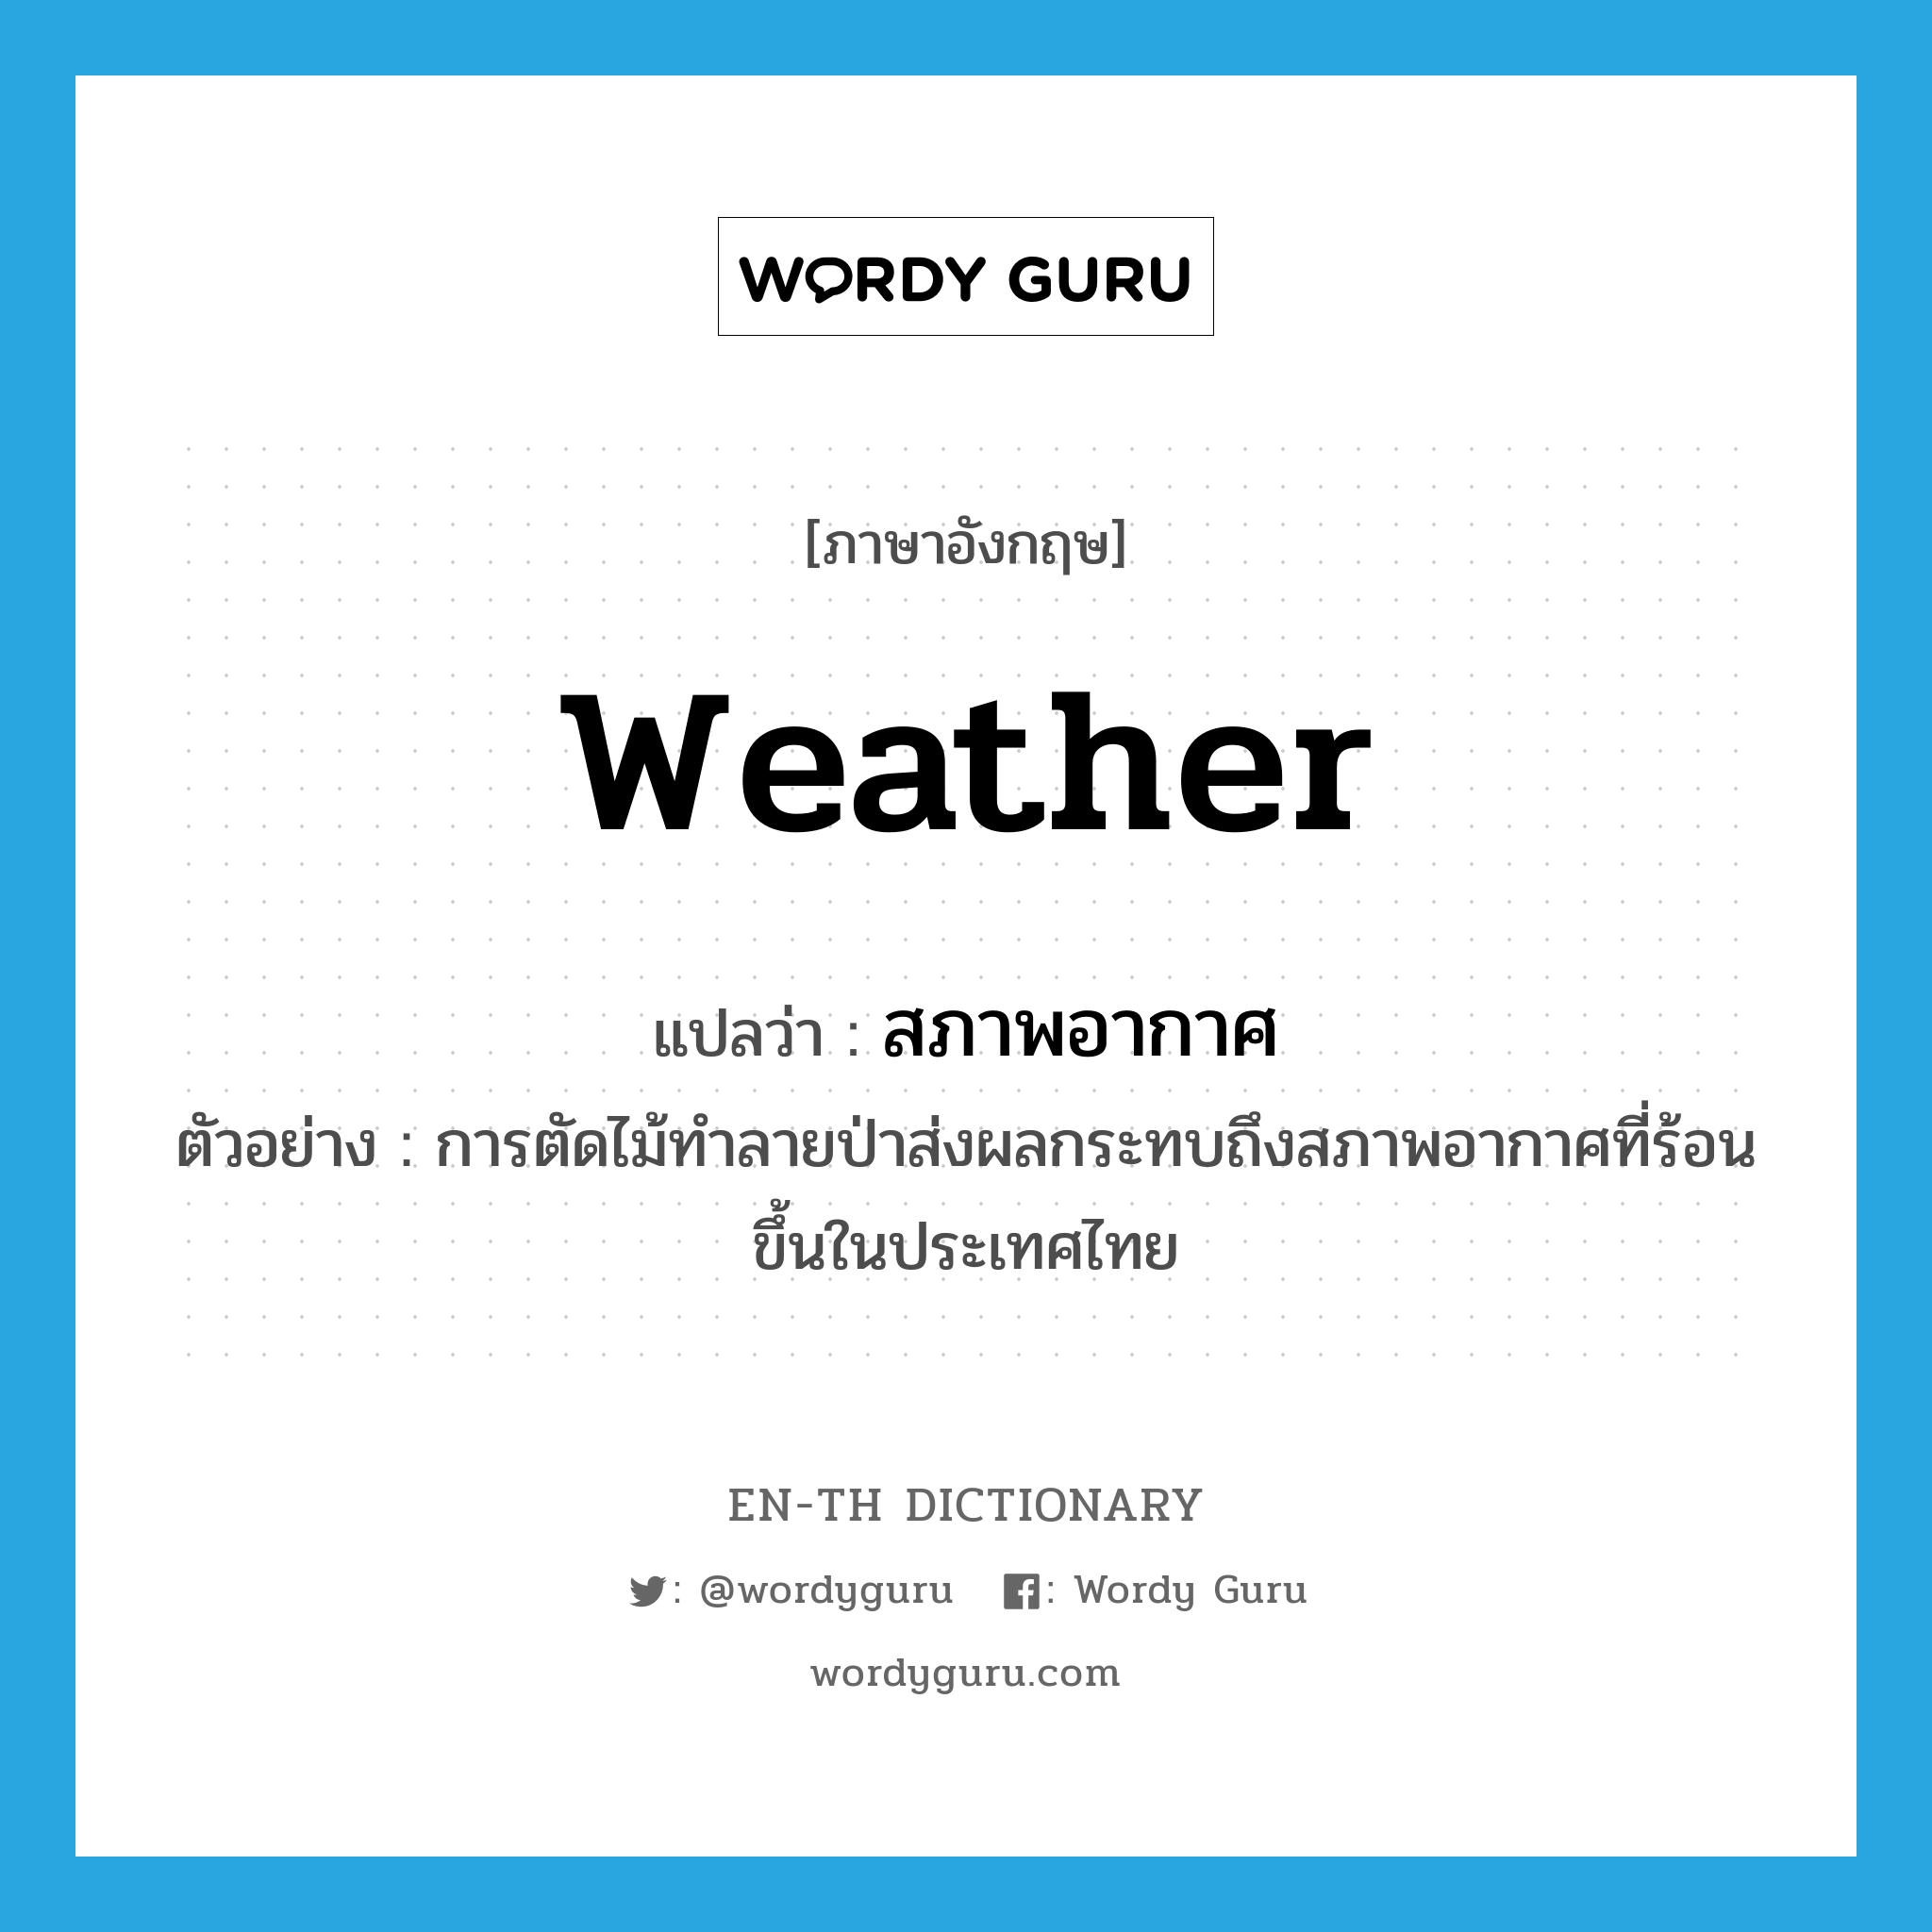 weather แปลว่า?, คำศัพท์ภาษาอังกฤษ weather แปลว่า สภาพอากาศ ประเภท N ตัวอย่าง การตัดไม้ทำลายป่าส่งผลกระทบถึงสภาพอากาศที่ร้อนขึ้นในประเทศไทย หมวด N